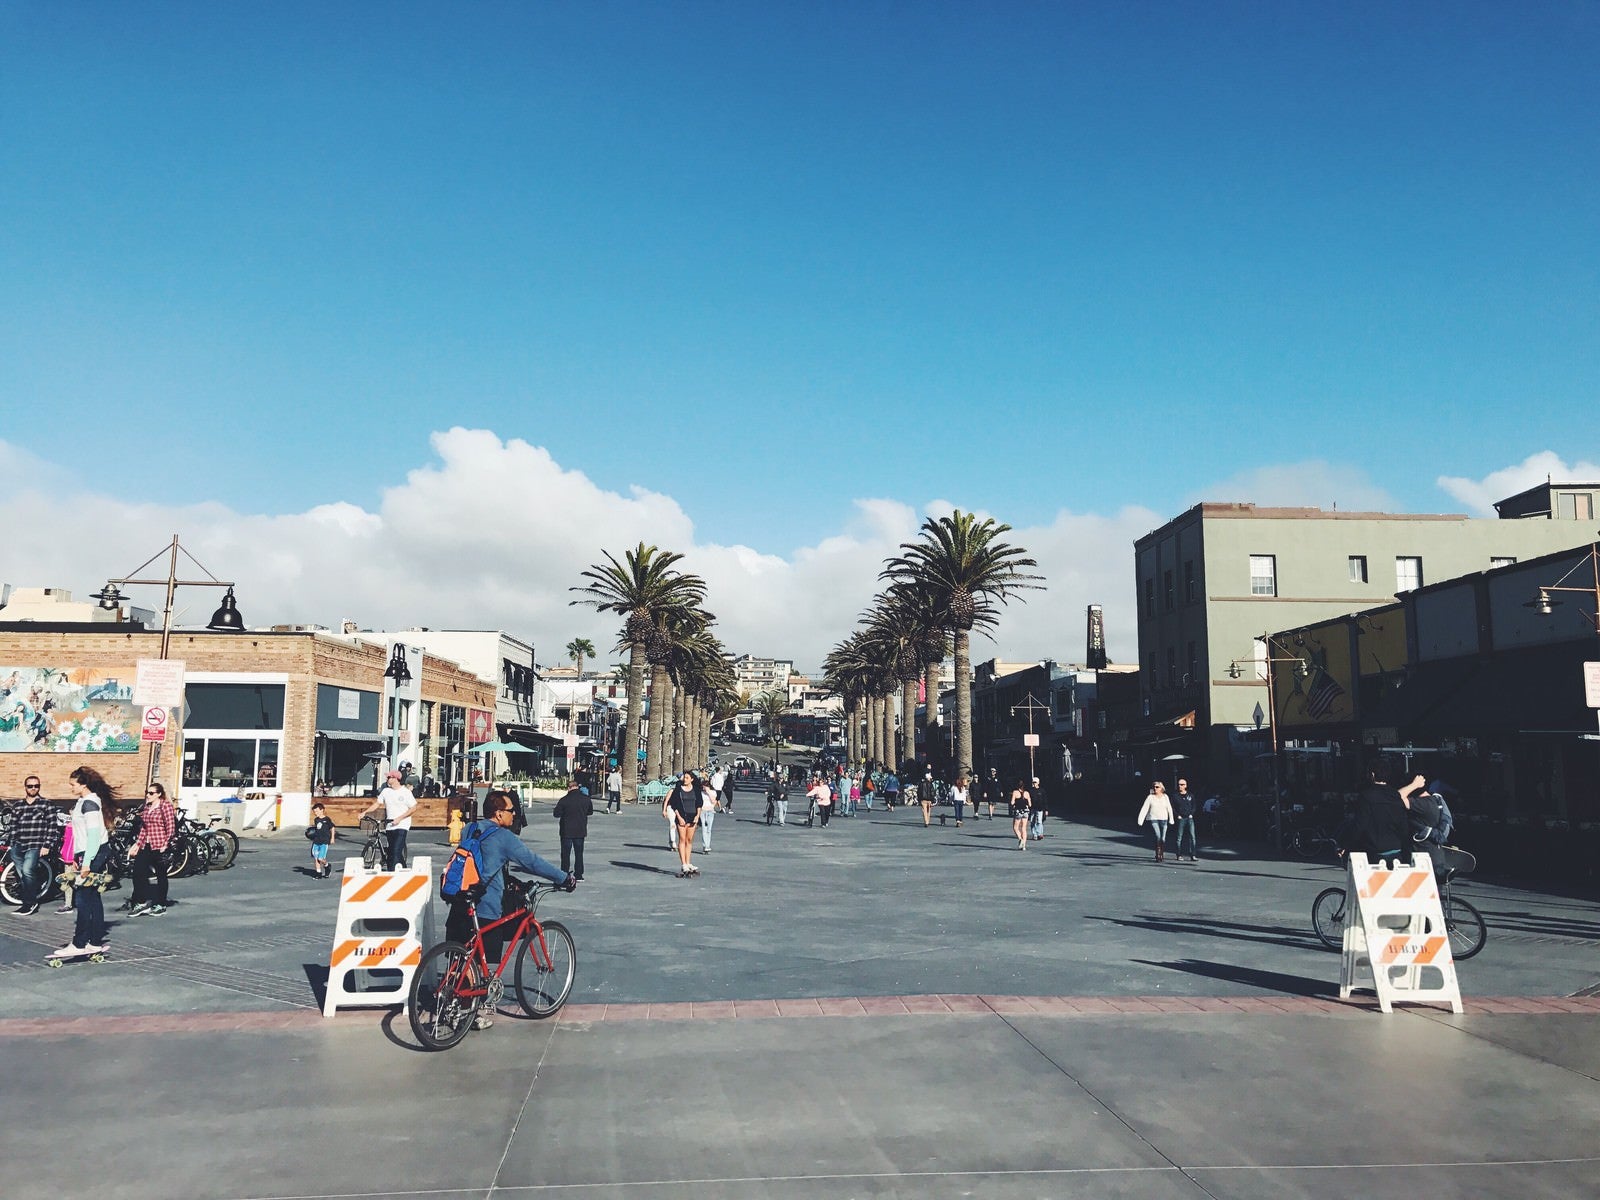 「カリフォルニアのハモサビーチ入口の街並み」の写真